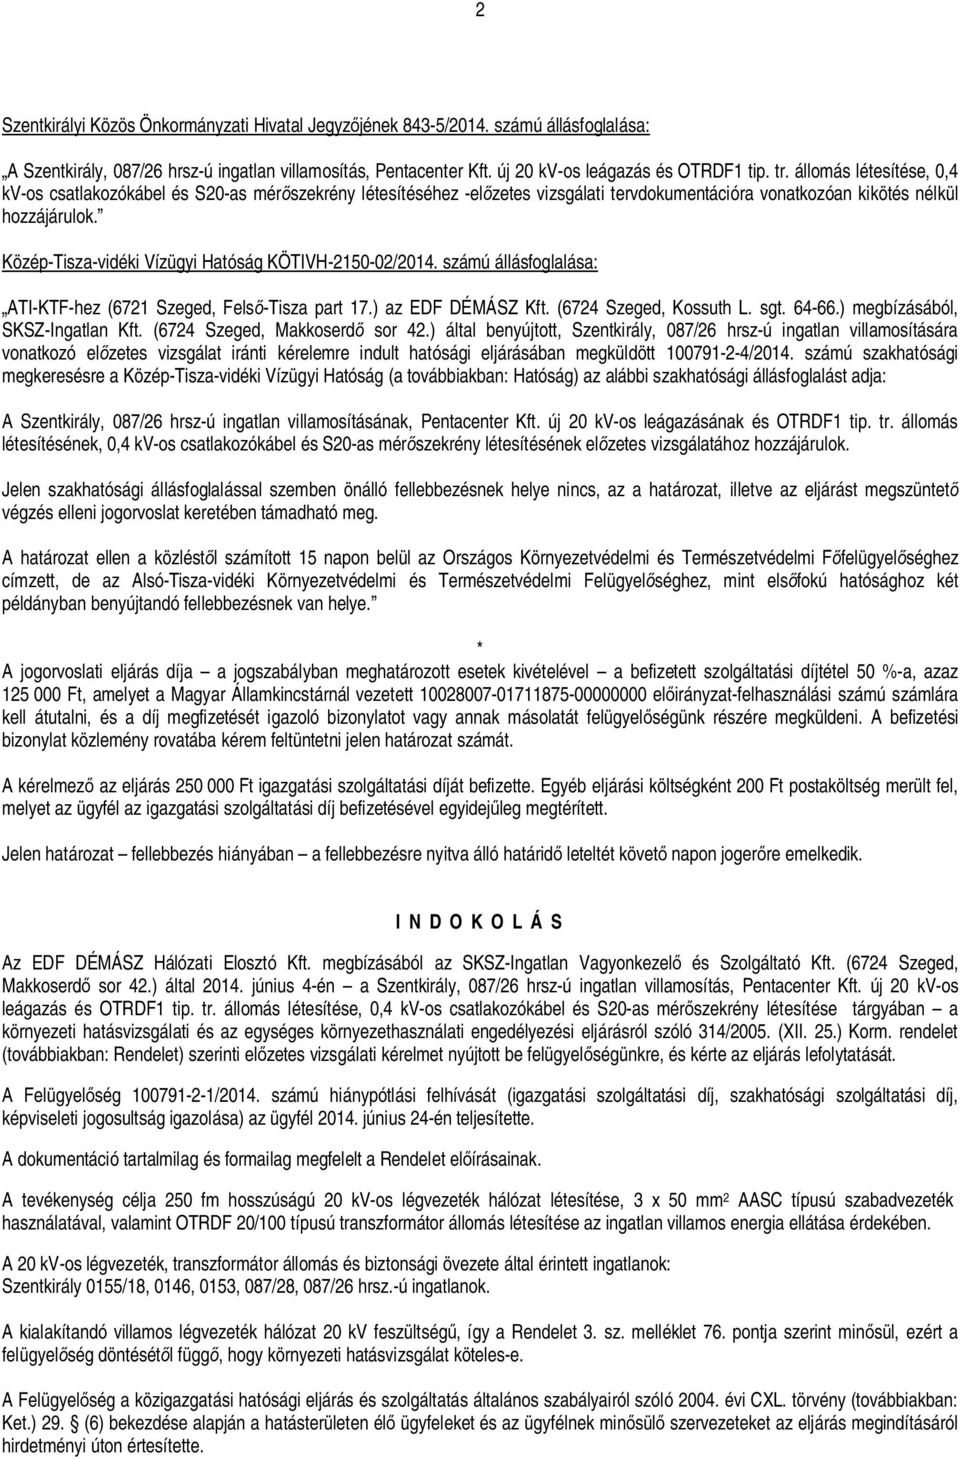 Közép-Tisza-vidéki Vízügyi Hatóság KÖTIVH-2150-02/2014. számú állásfoglalása: ATI-KTF-hez (6721 Szeged, Fels -Tisza part 17.) az EDF DÉMÁSZ Kft. (6724 Szeged, Kossuth L. sgt. 64-66.